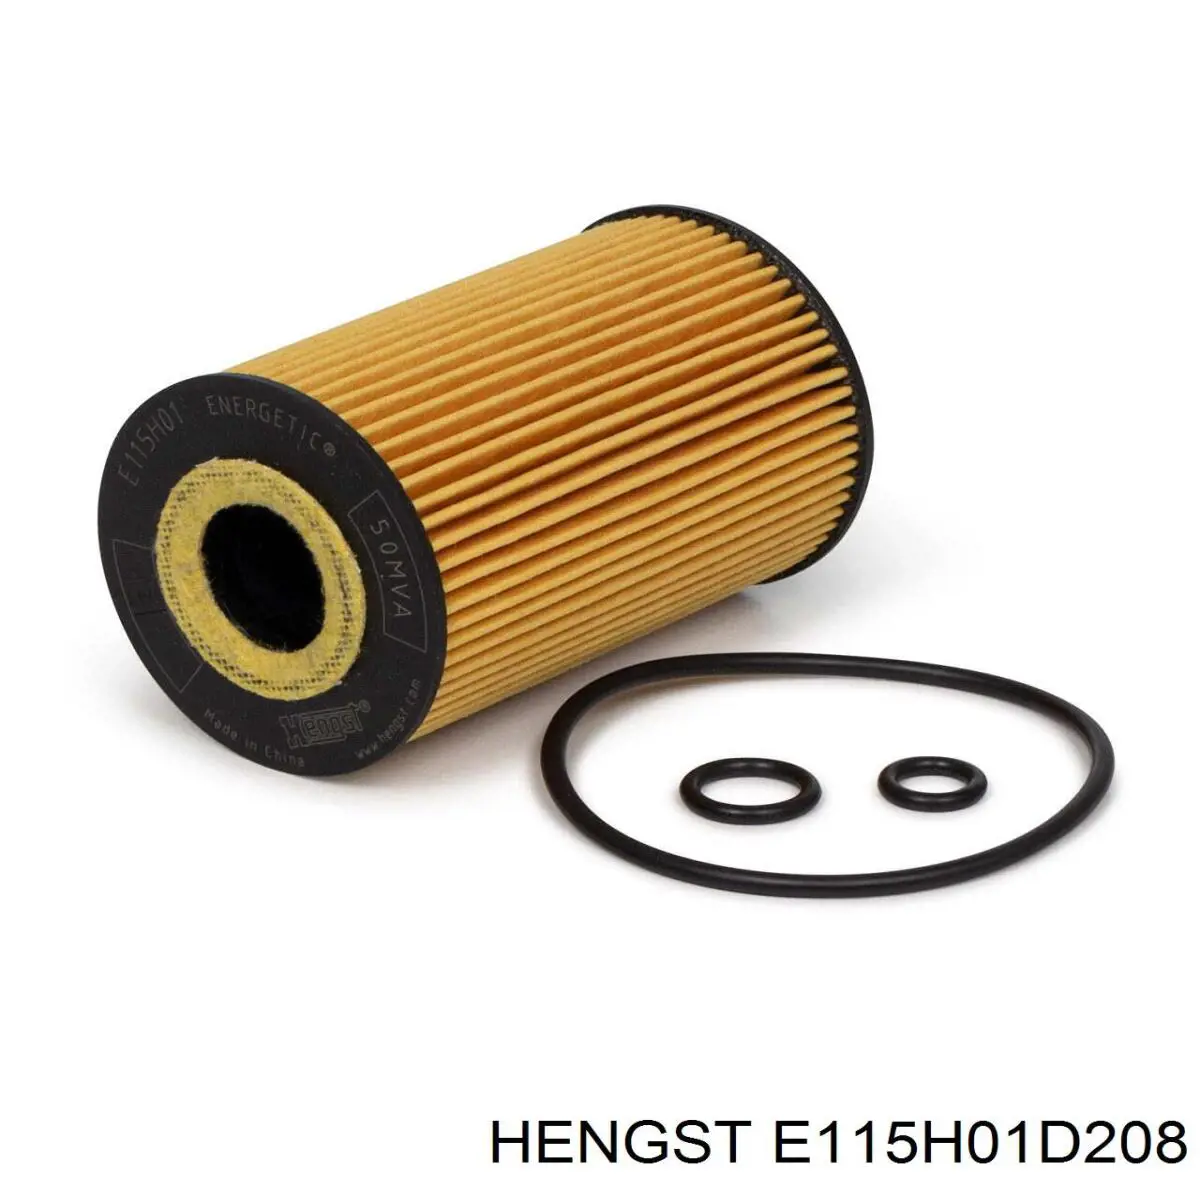 E115H01 D208 Hengst filtro de aceite